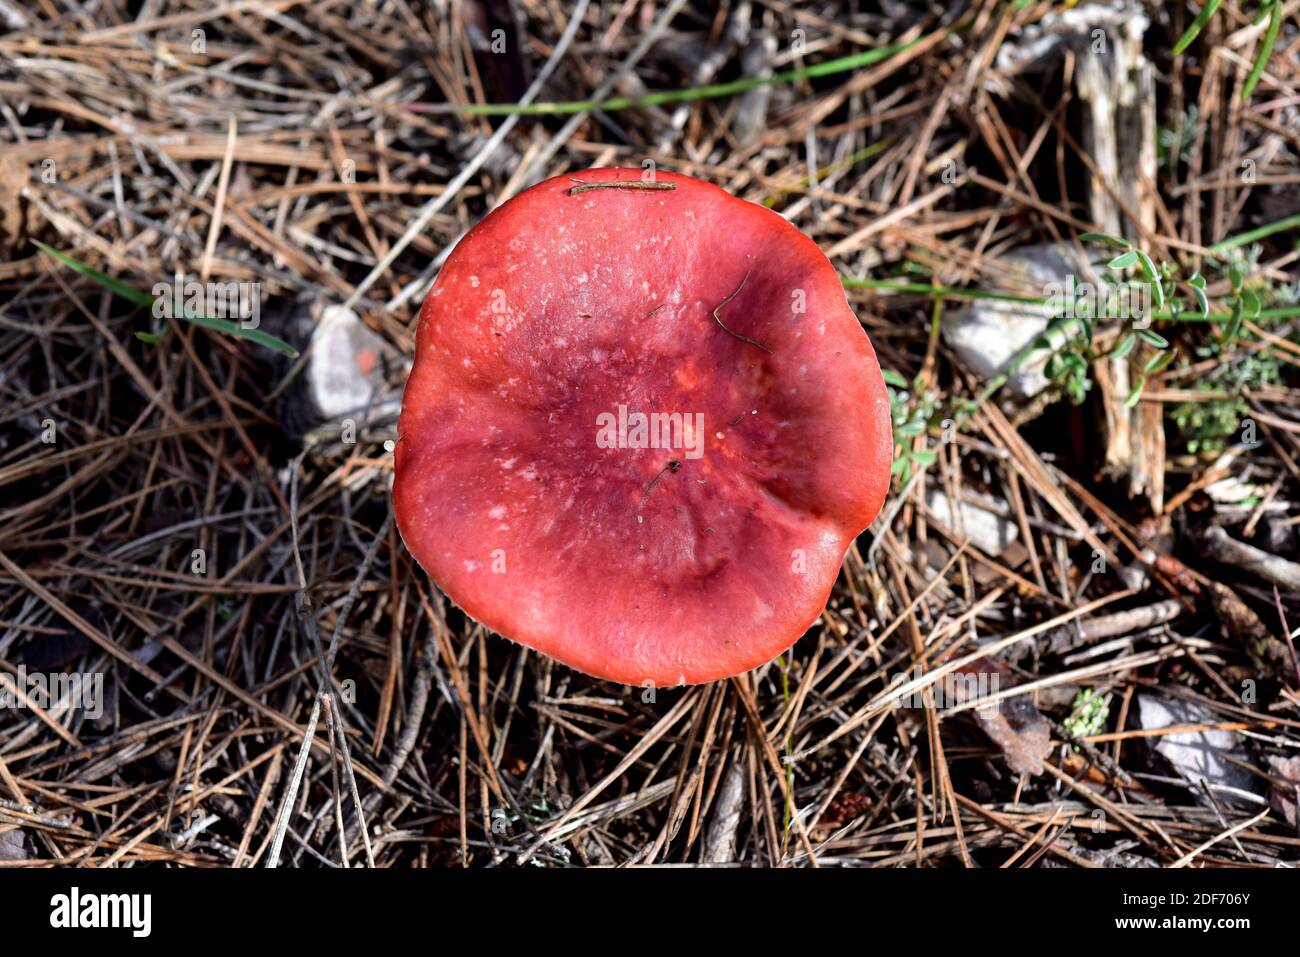 Emetic-Täubling oder Sickener (Russula emetica) ist ein giftiger Pilz, wenn er roh verzehrt wird. Dieses Foto wurde in der Nähe von La Llacuna, Provinz Barcelona, aufgenommen. Stockfoto